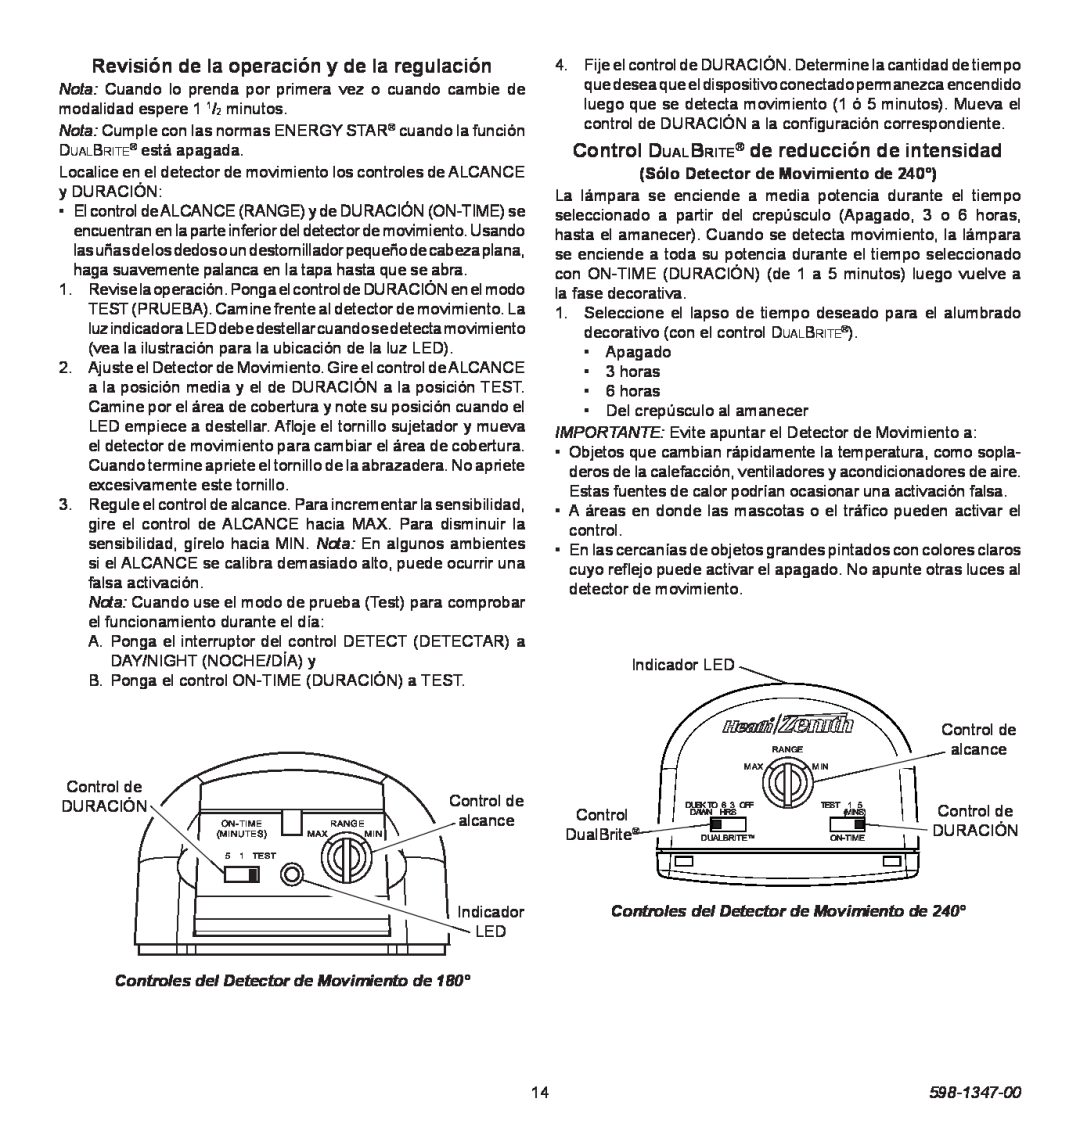 Heath Zenith 598-1347-00 Revisión de la operación y de la regulación, Control DualBrite de reducción de intensidad 